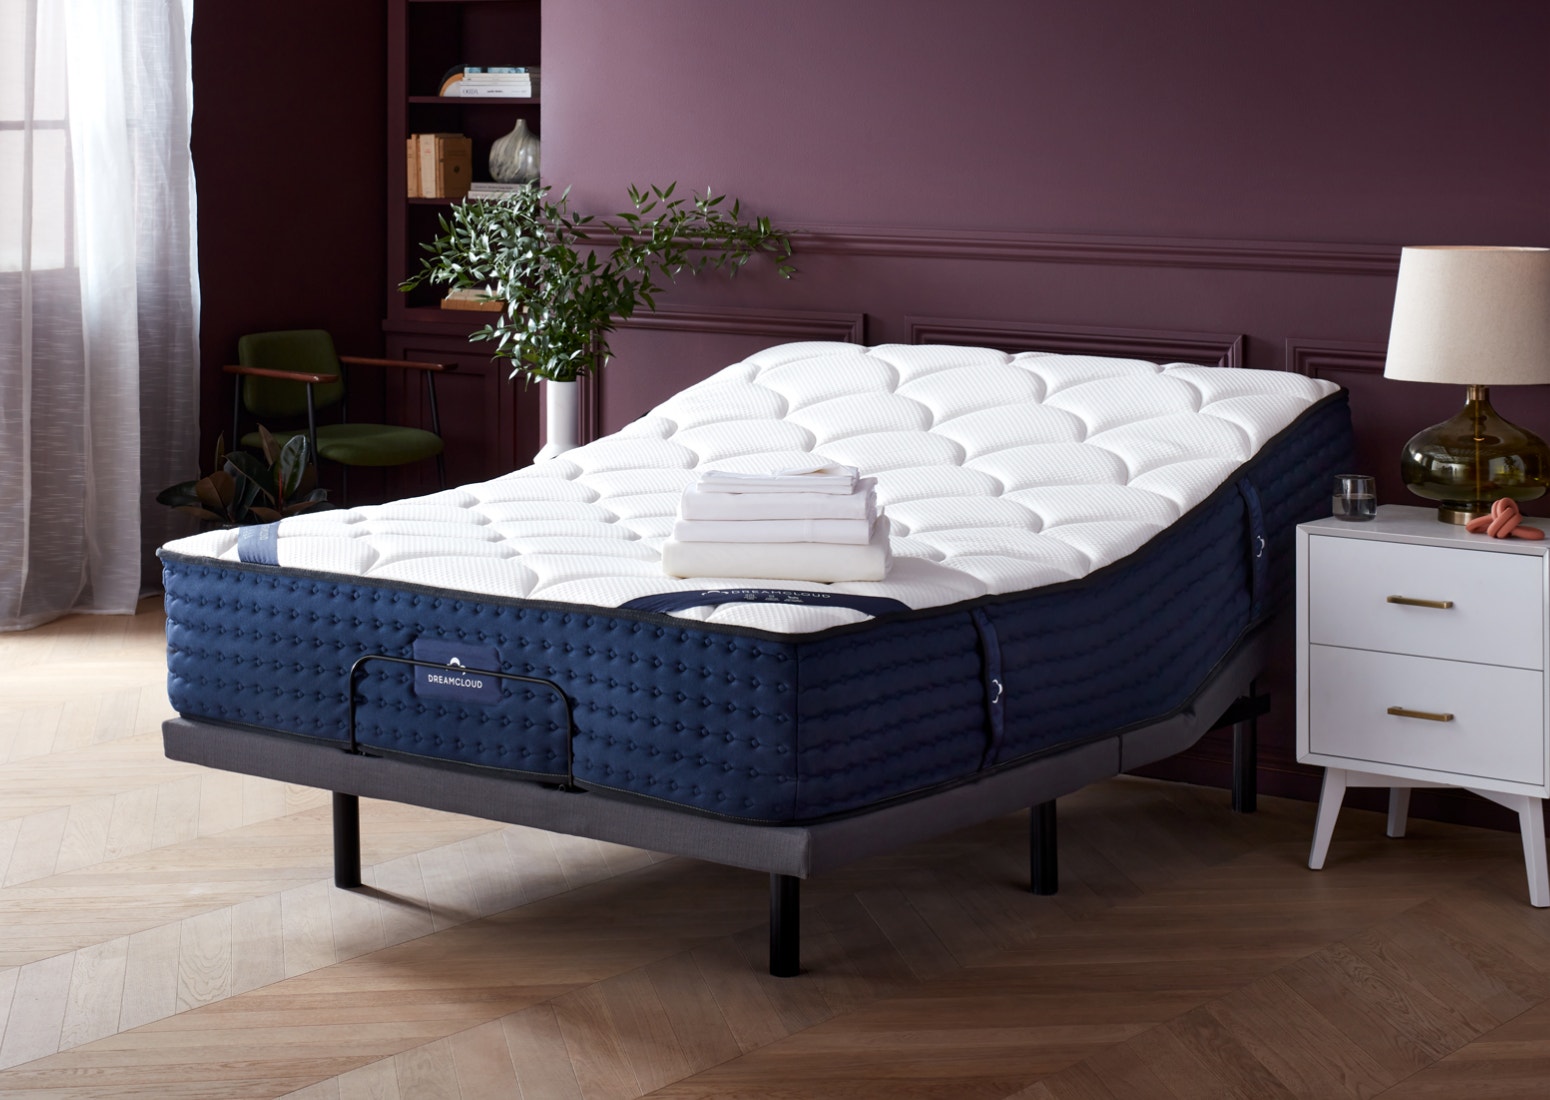 Split King Size Adjustable Bed Frames, Queen Size Split Adjustable Bed Frame